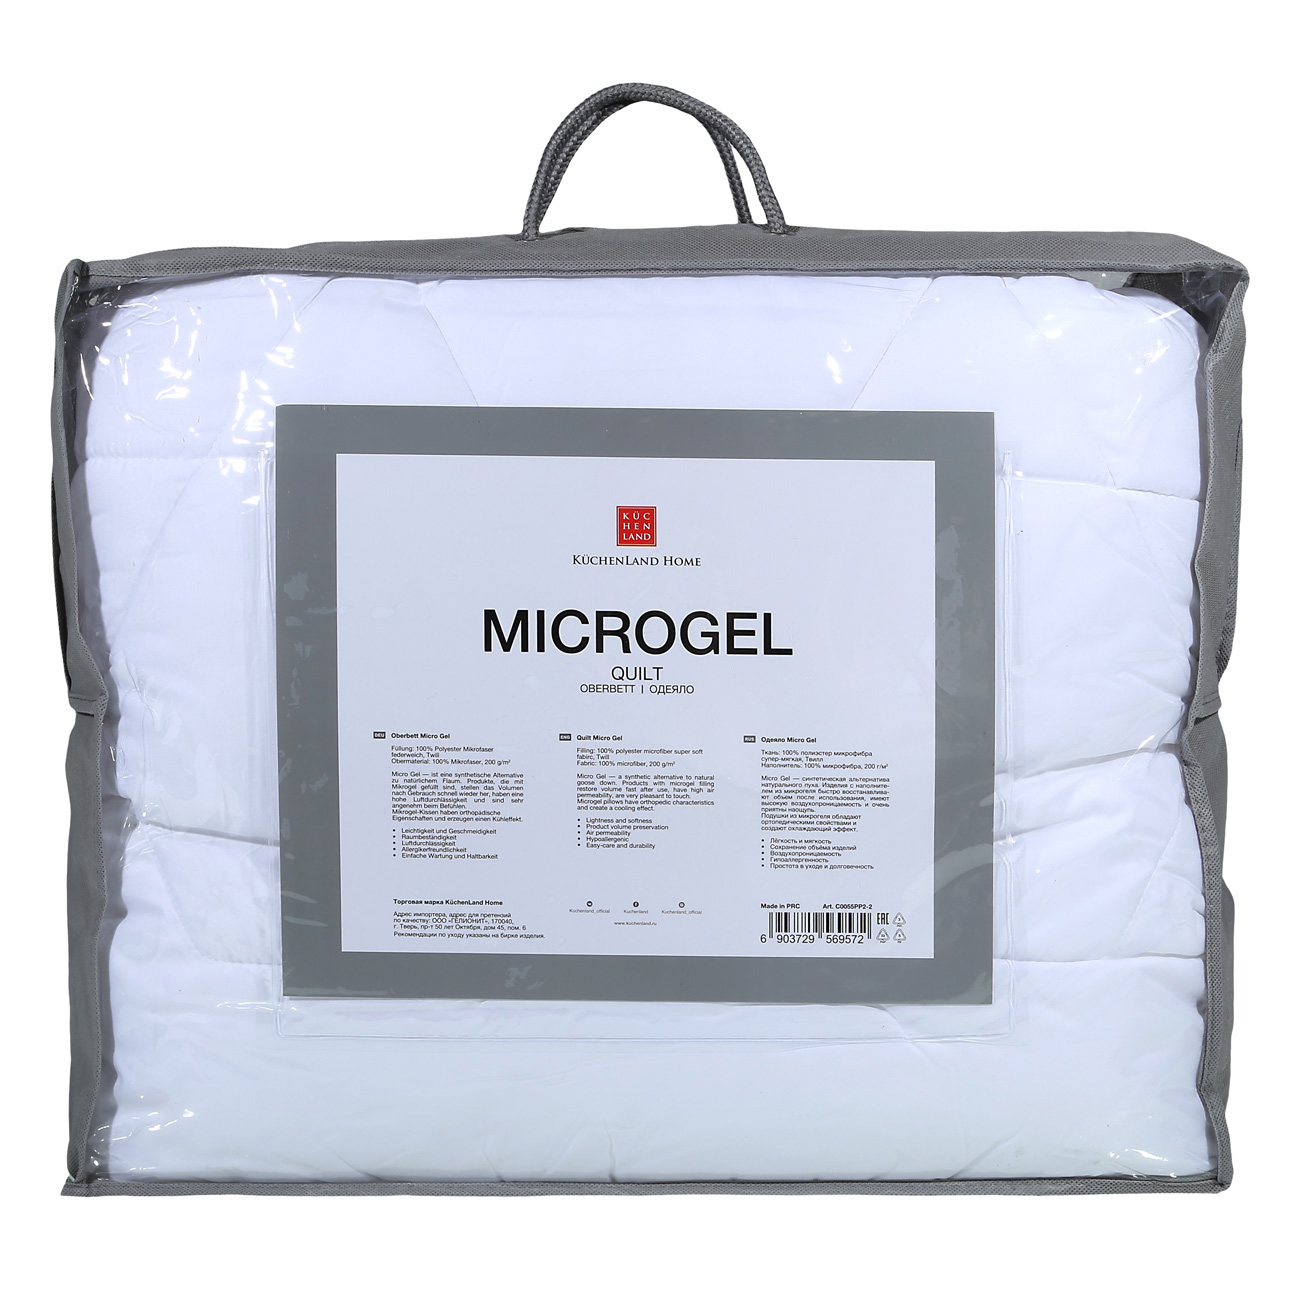 Одеяло, 140х200 см, микрофибра/микрогель, Microgel